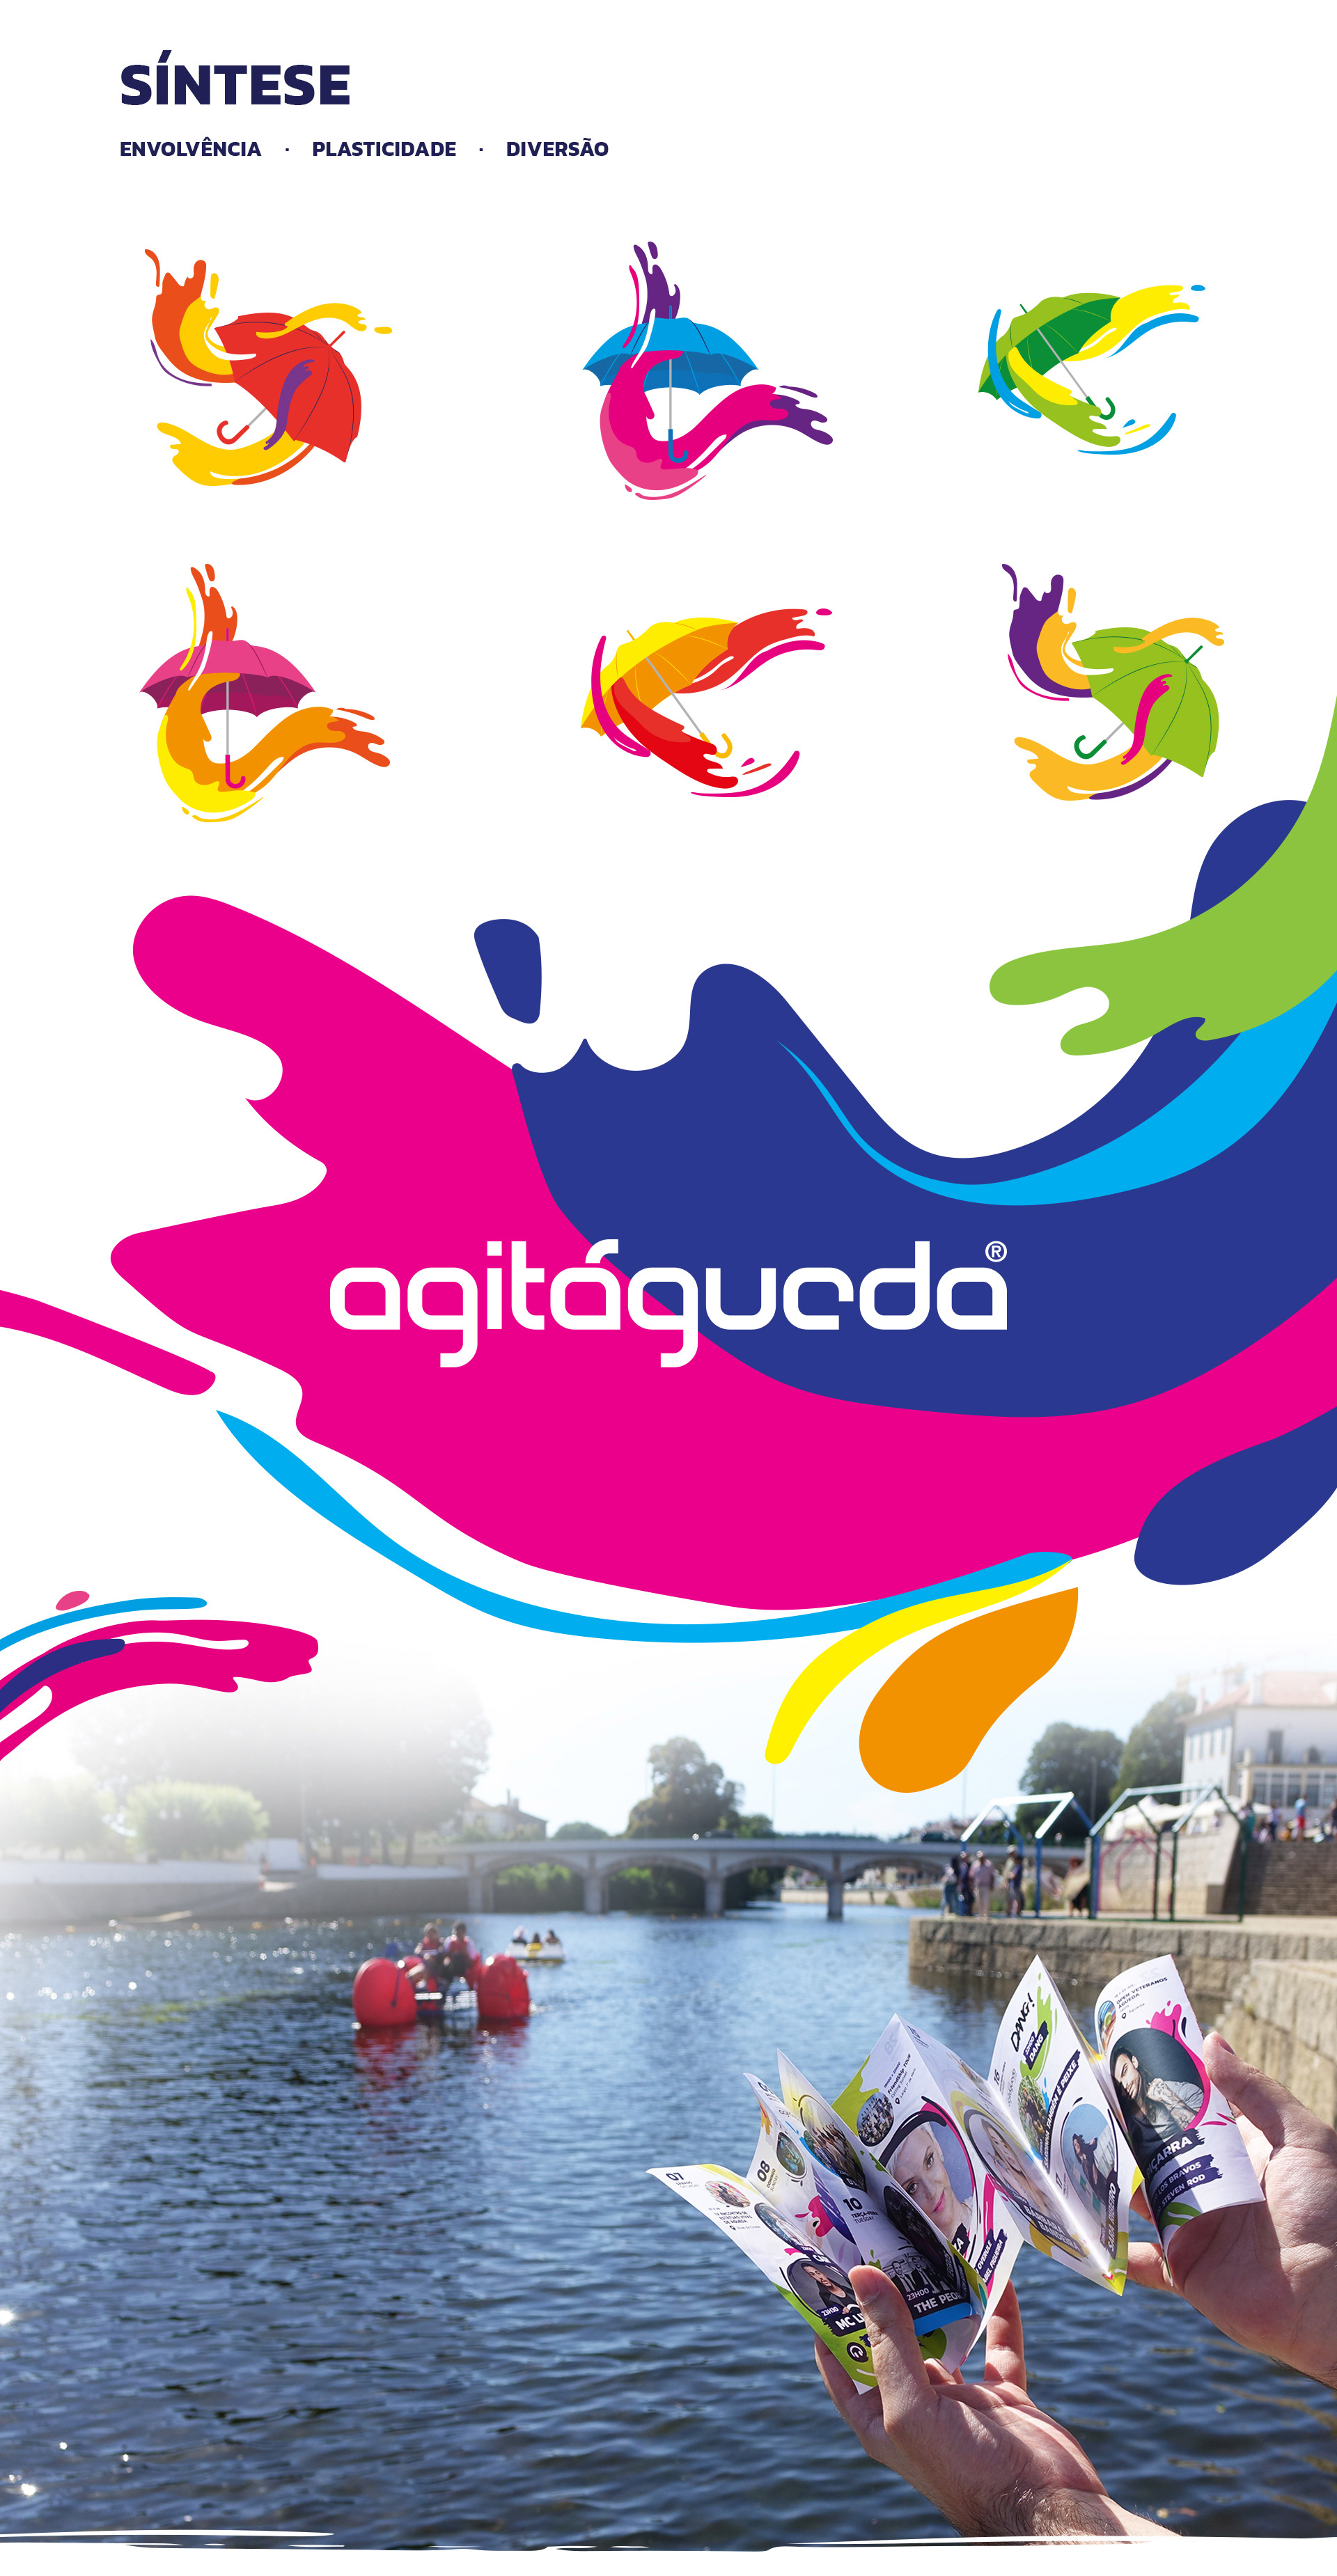 AgitÁgueda Art Festival